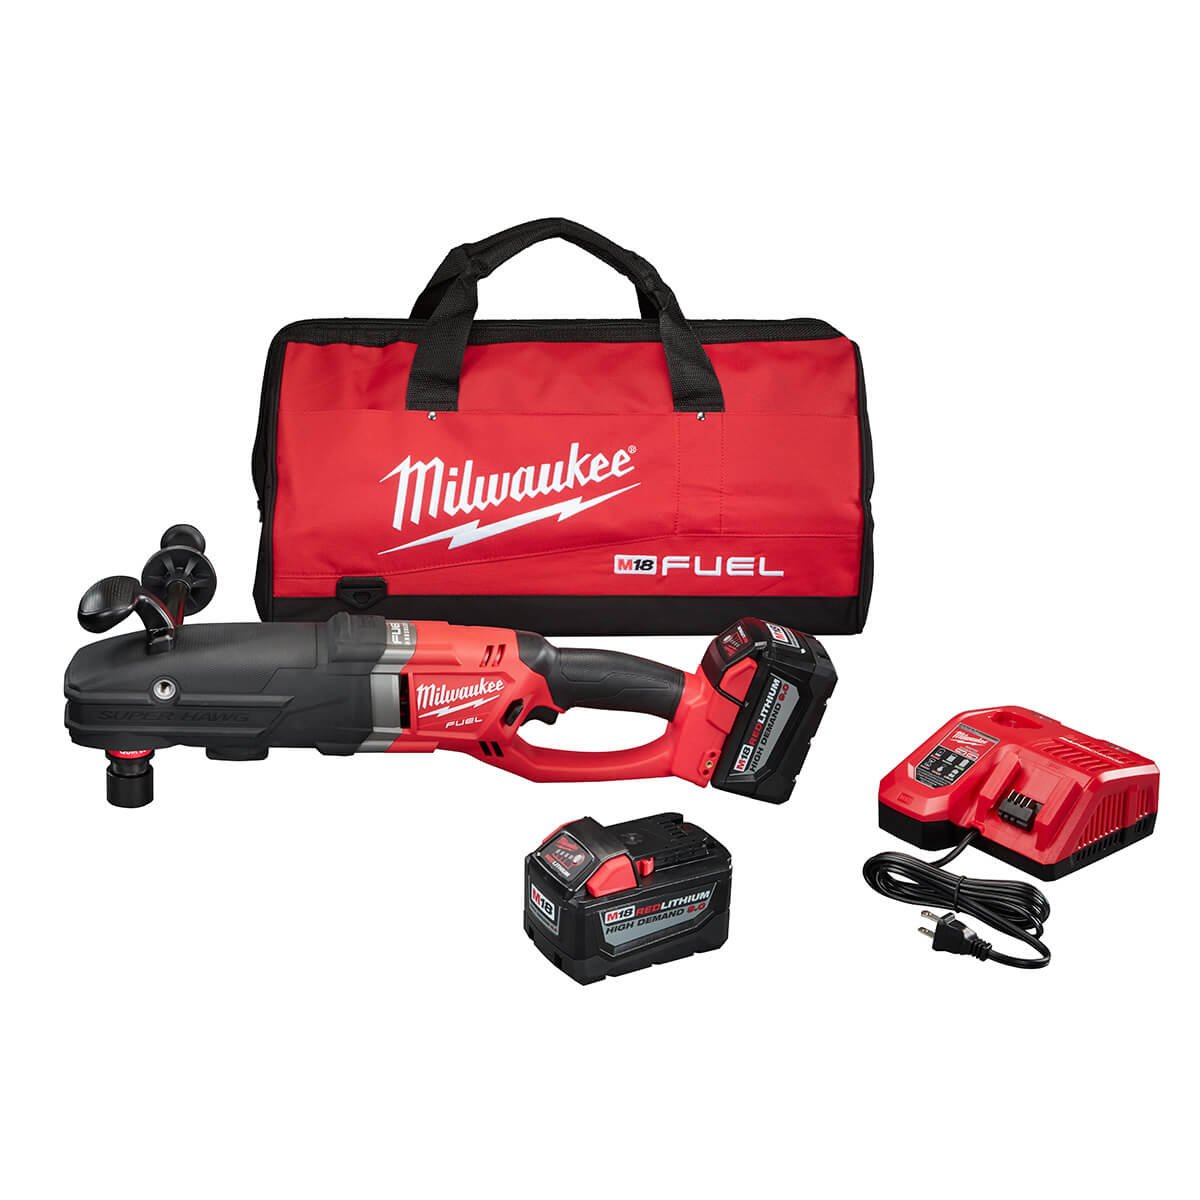 Milwaukee 2711-22HD M18 Fuel Super Hawg Right Angle Drill HD Kit w/ QUIK-LOK